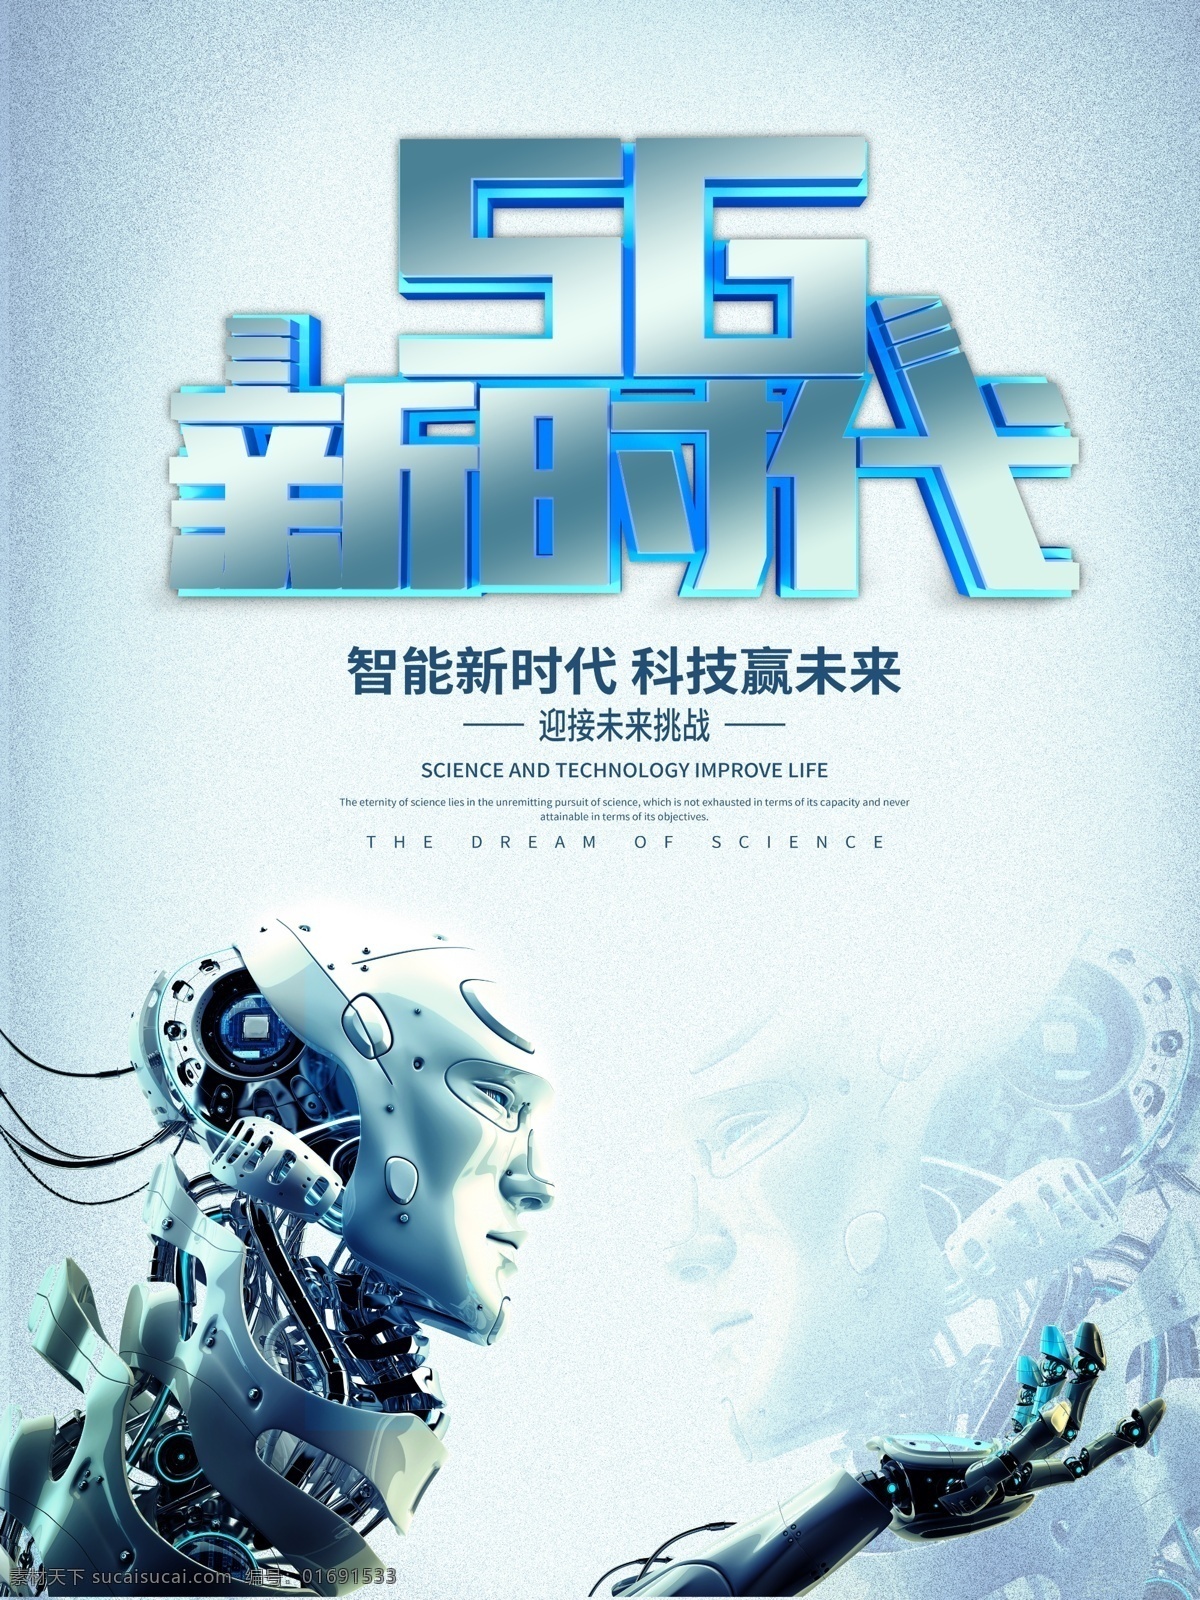 5g新时代 科技 人工智能 智能新时代 科技赢未来 迎接未来 机器人 海报